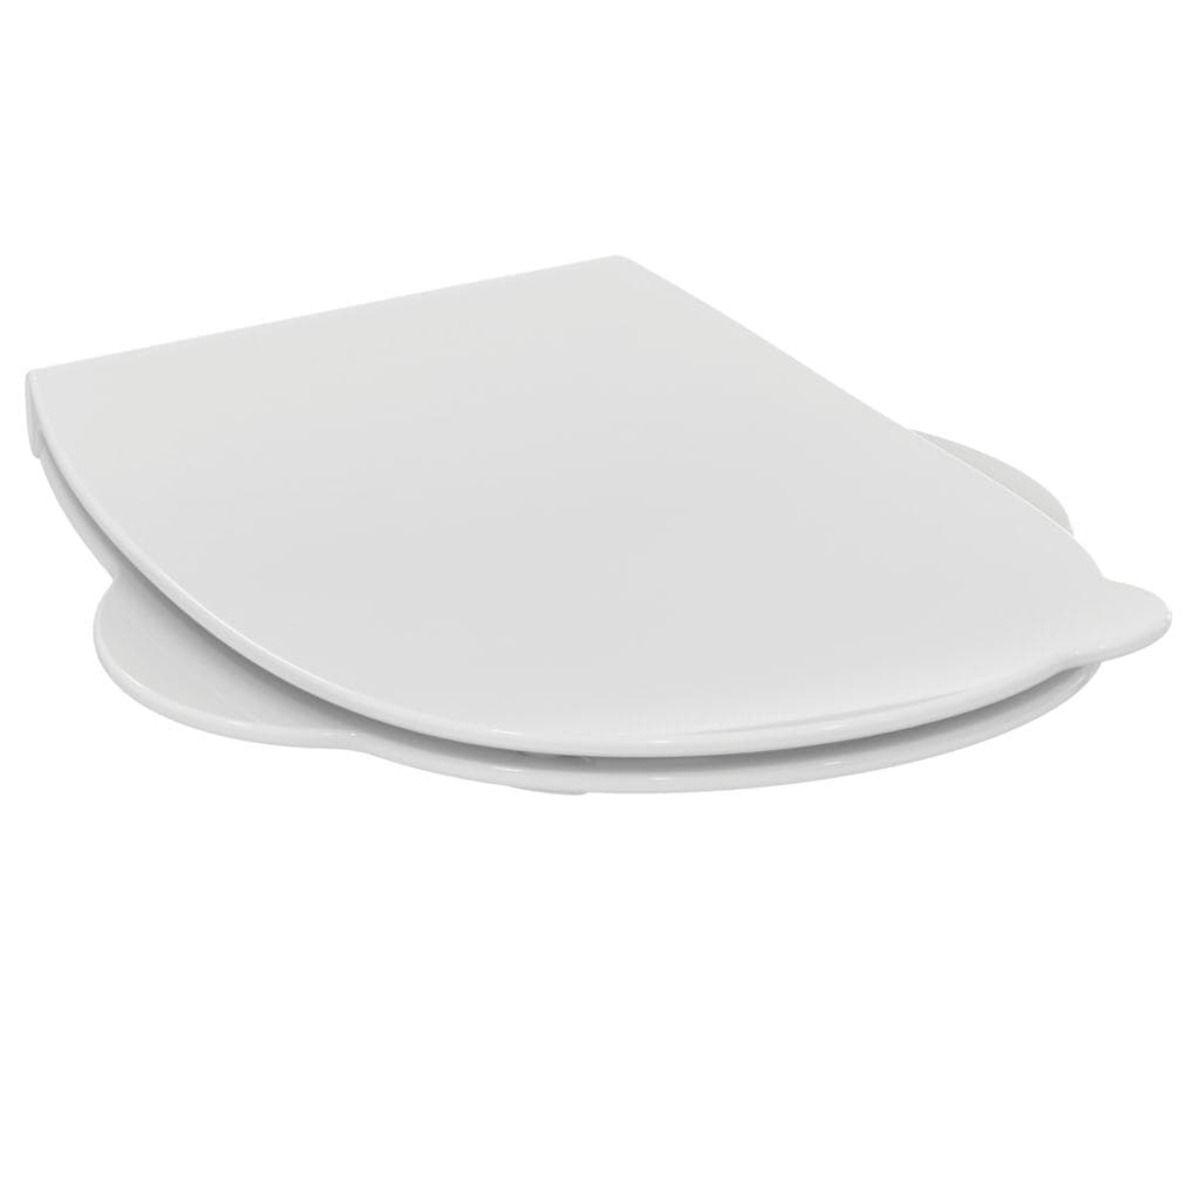 Wc prkénko Ideal Standard Contour 21 duroplast bílá S453301 - Siko - koupelny - kuchyně